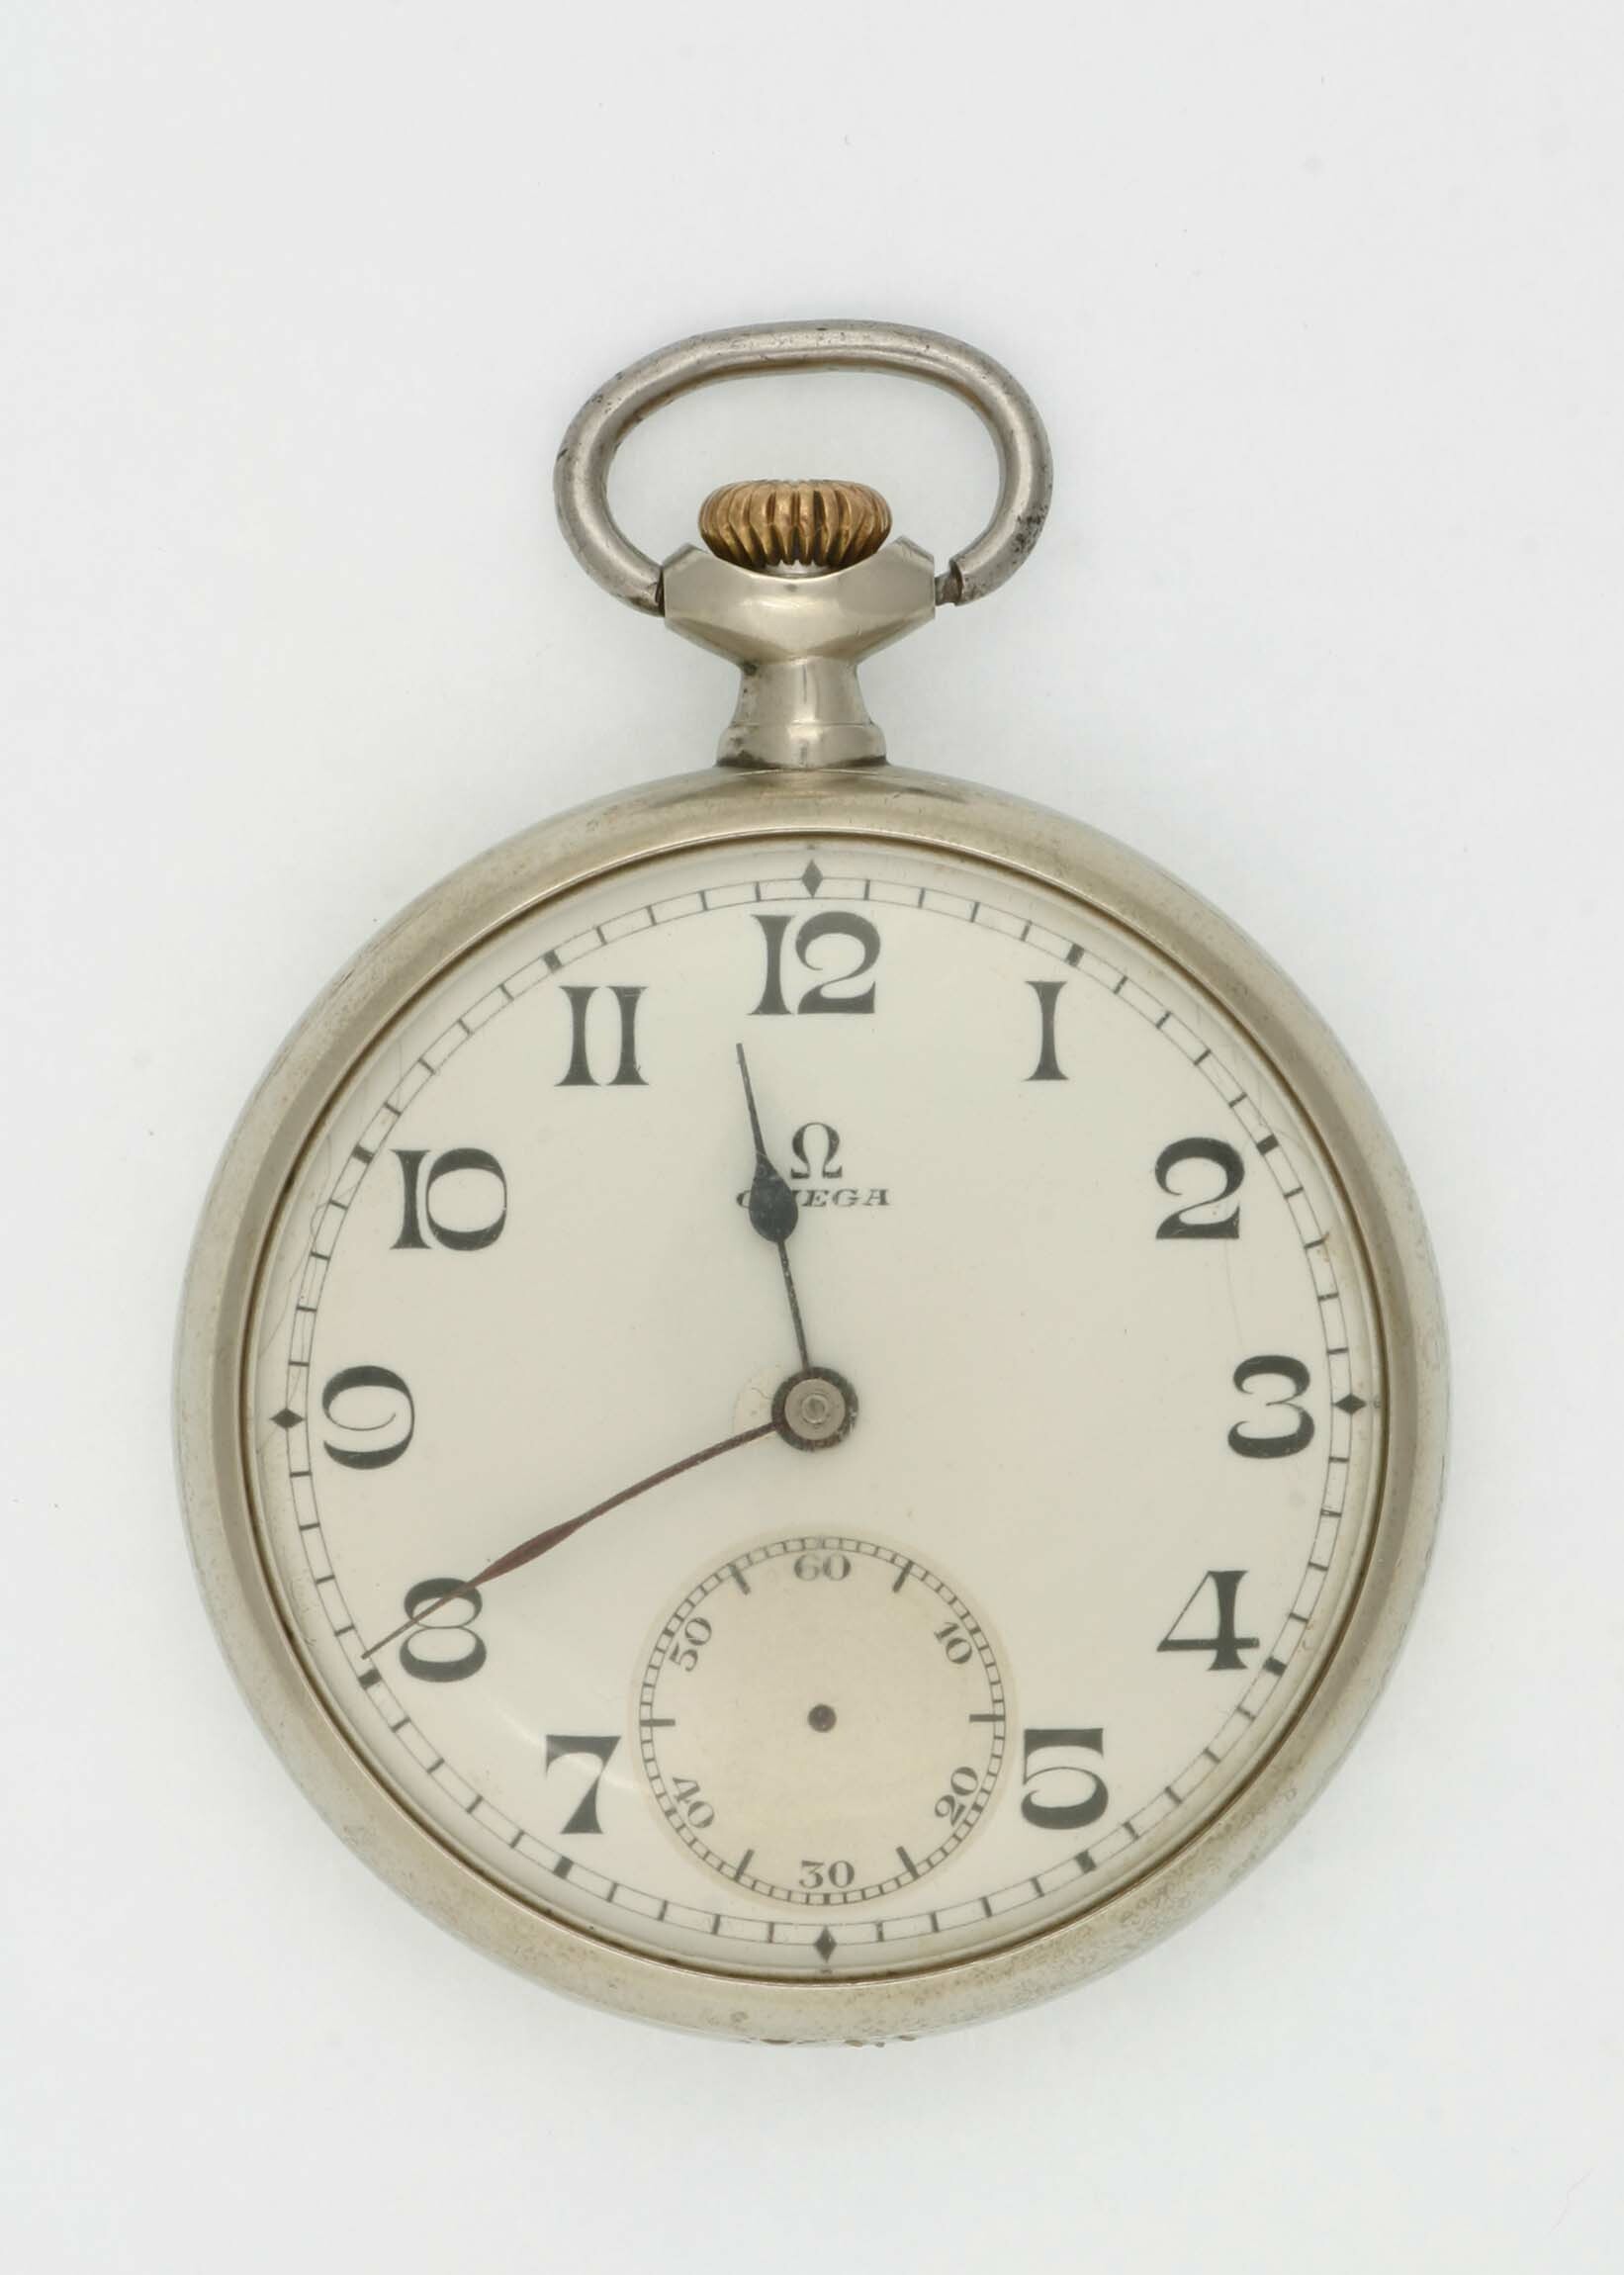 Taschenuhr, Omega, Biel, um 1930 (Deutsches Uhrenmuseum CC BY-SA)